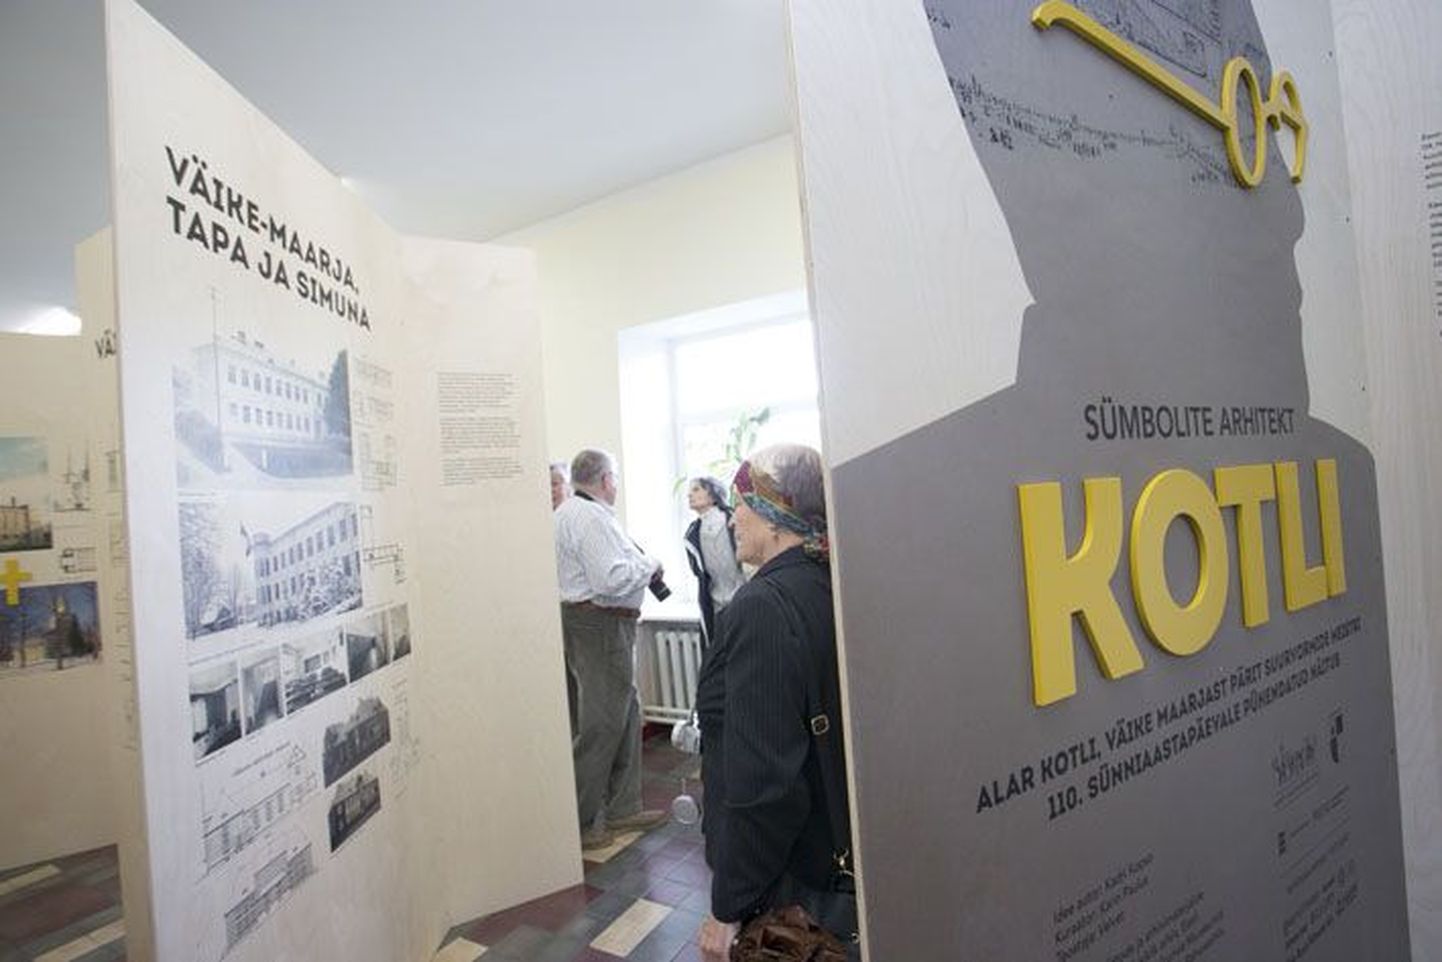 Näitus "Sümbolite arhitekt Alar Kotli" Väike-Maarja gümnaasiumi algklasside majas.